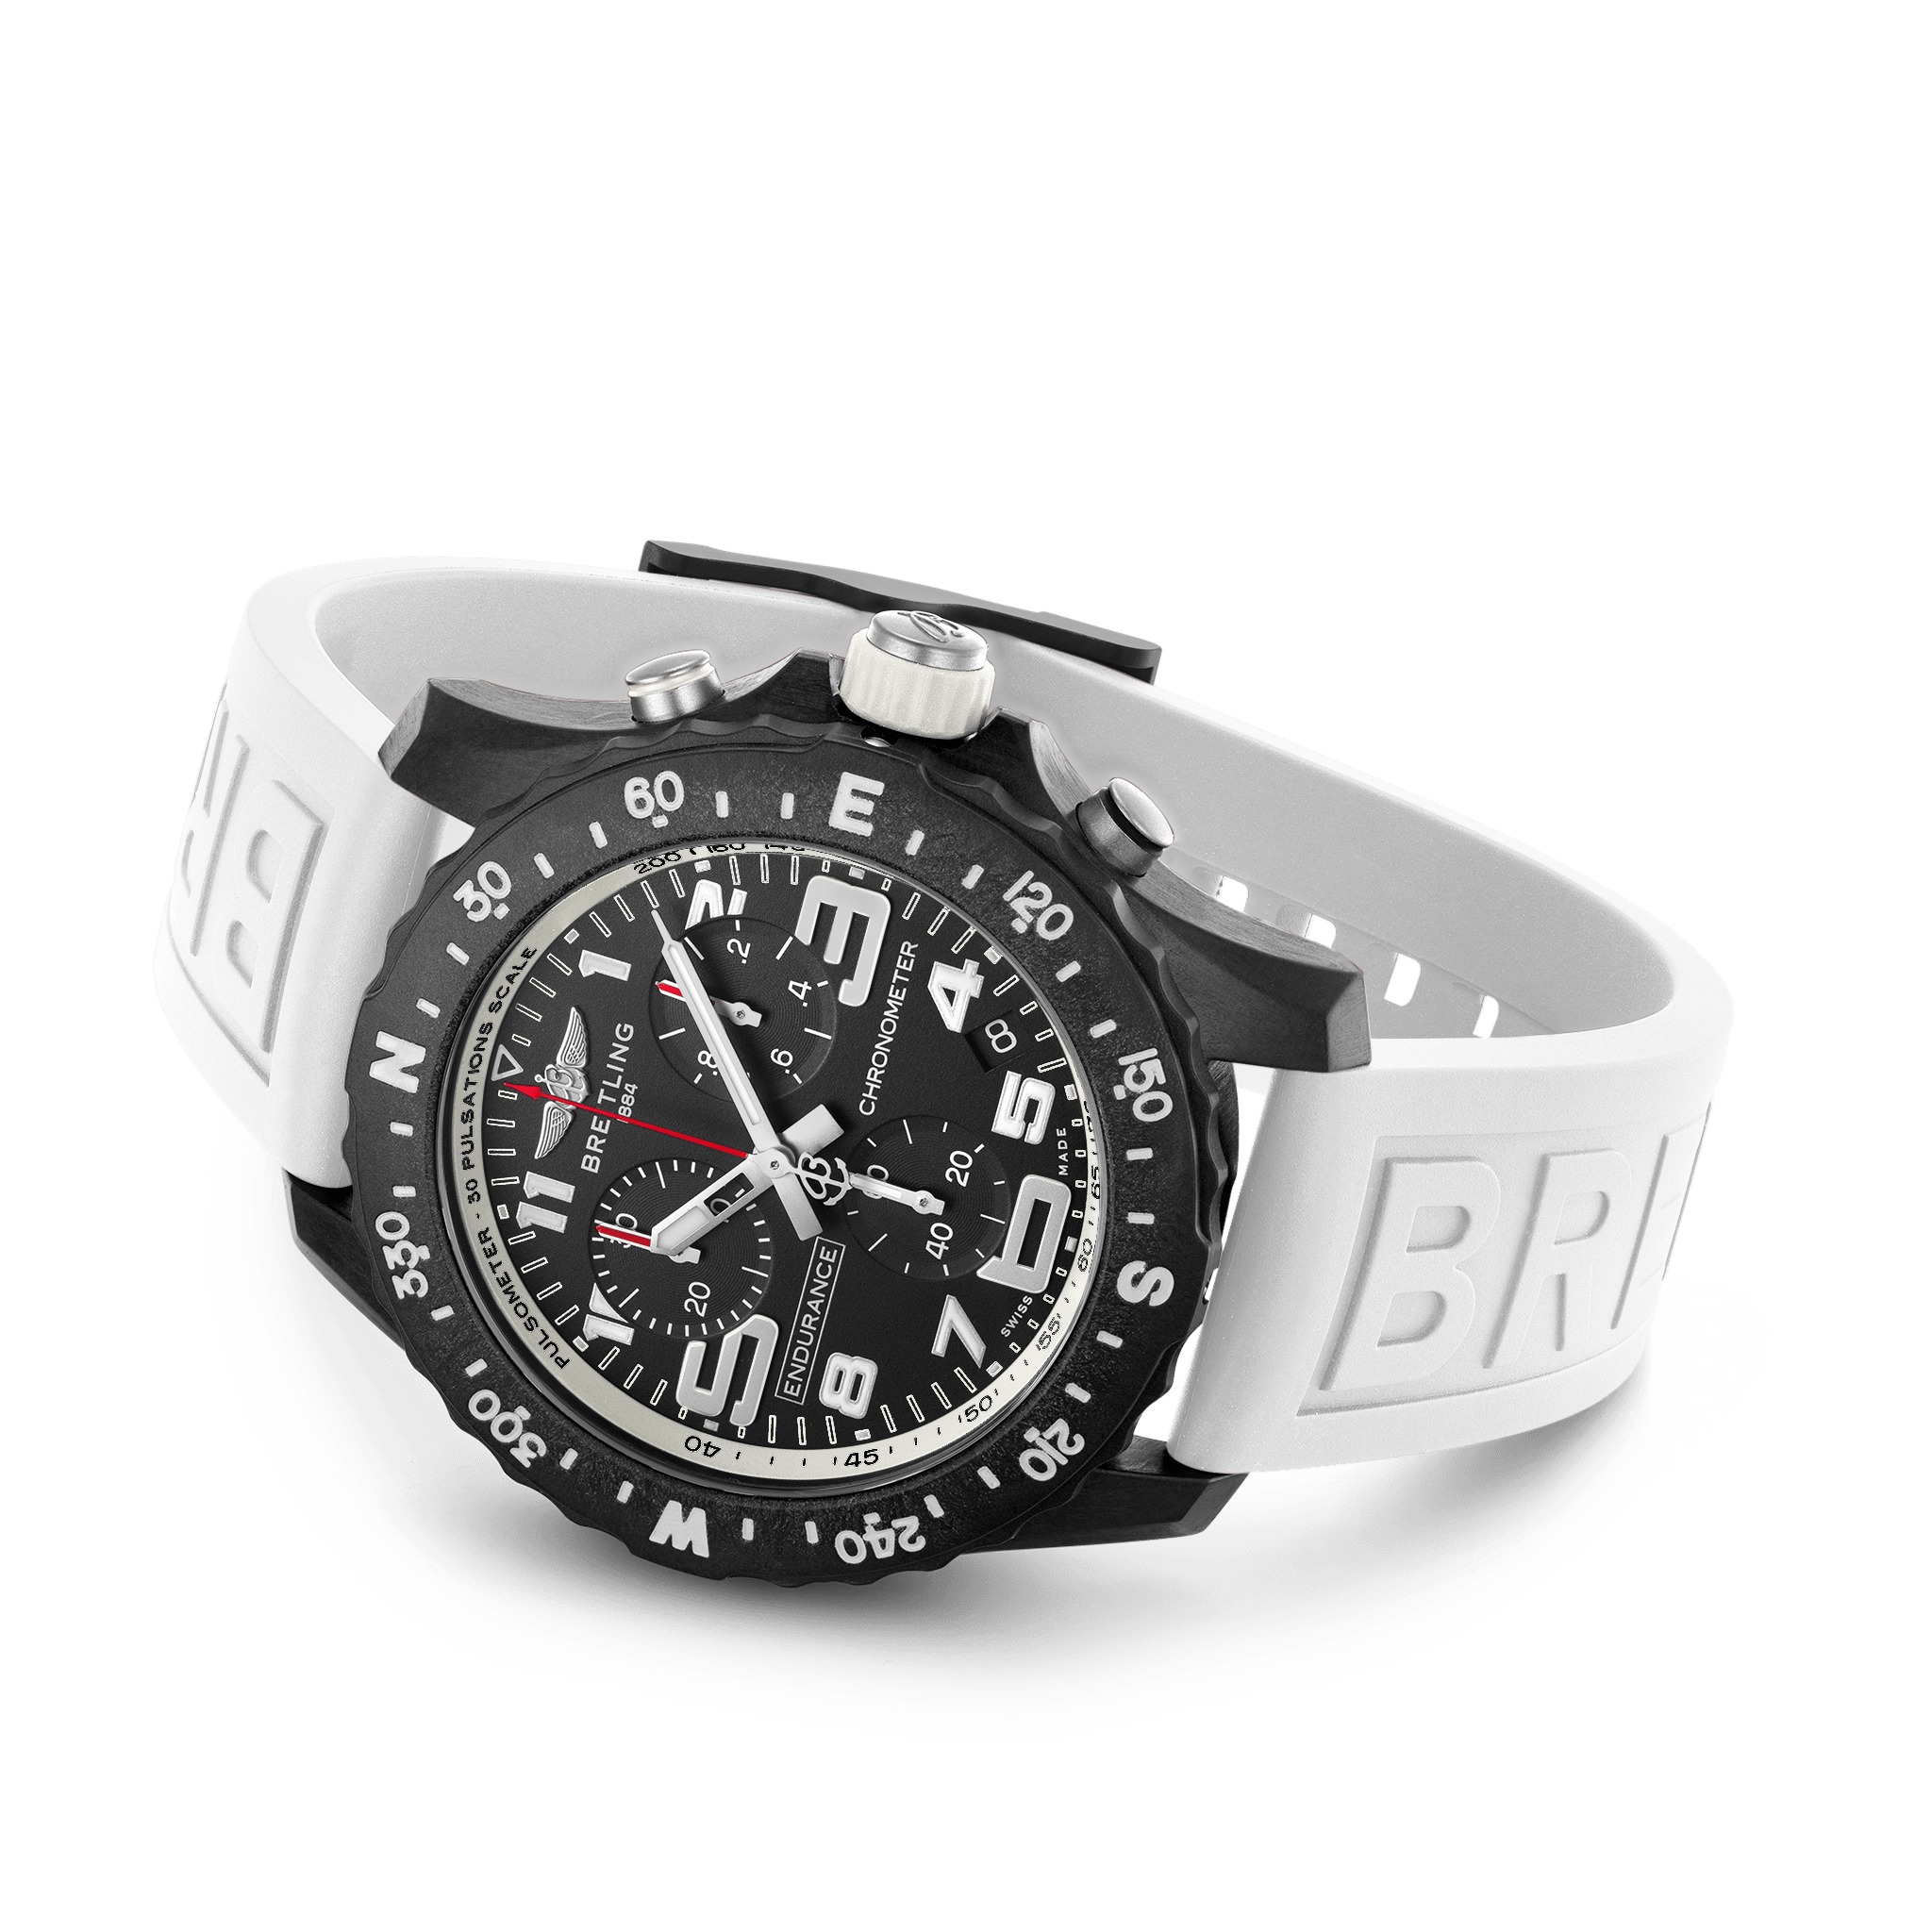 X82310A71B1S1 ENDURANCE PRO - Kamal Watch Company